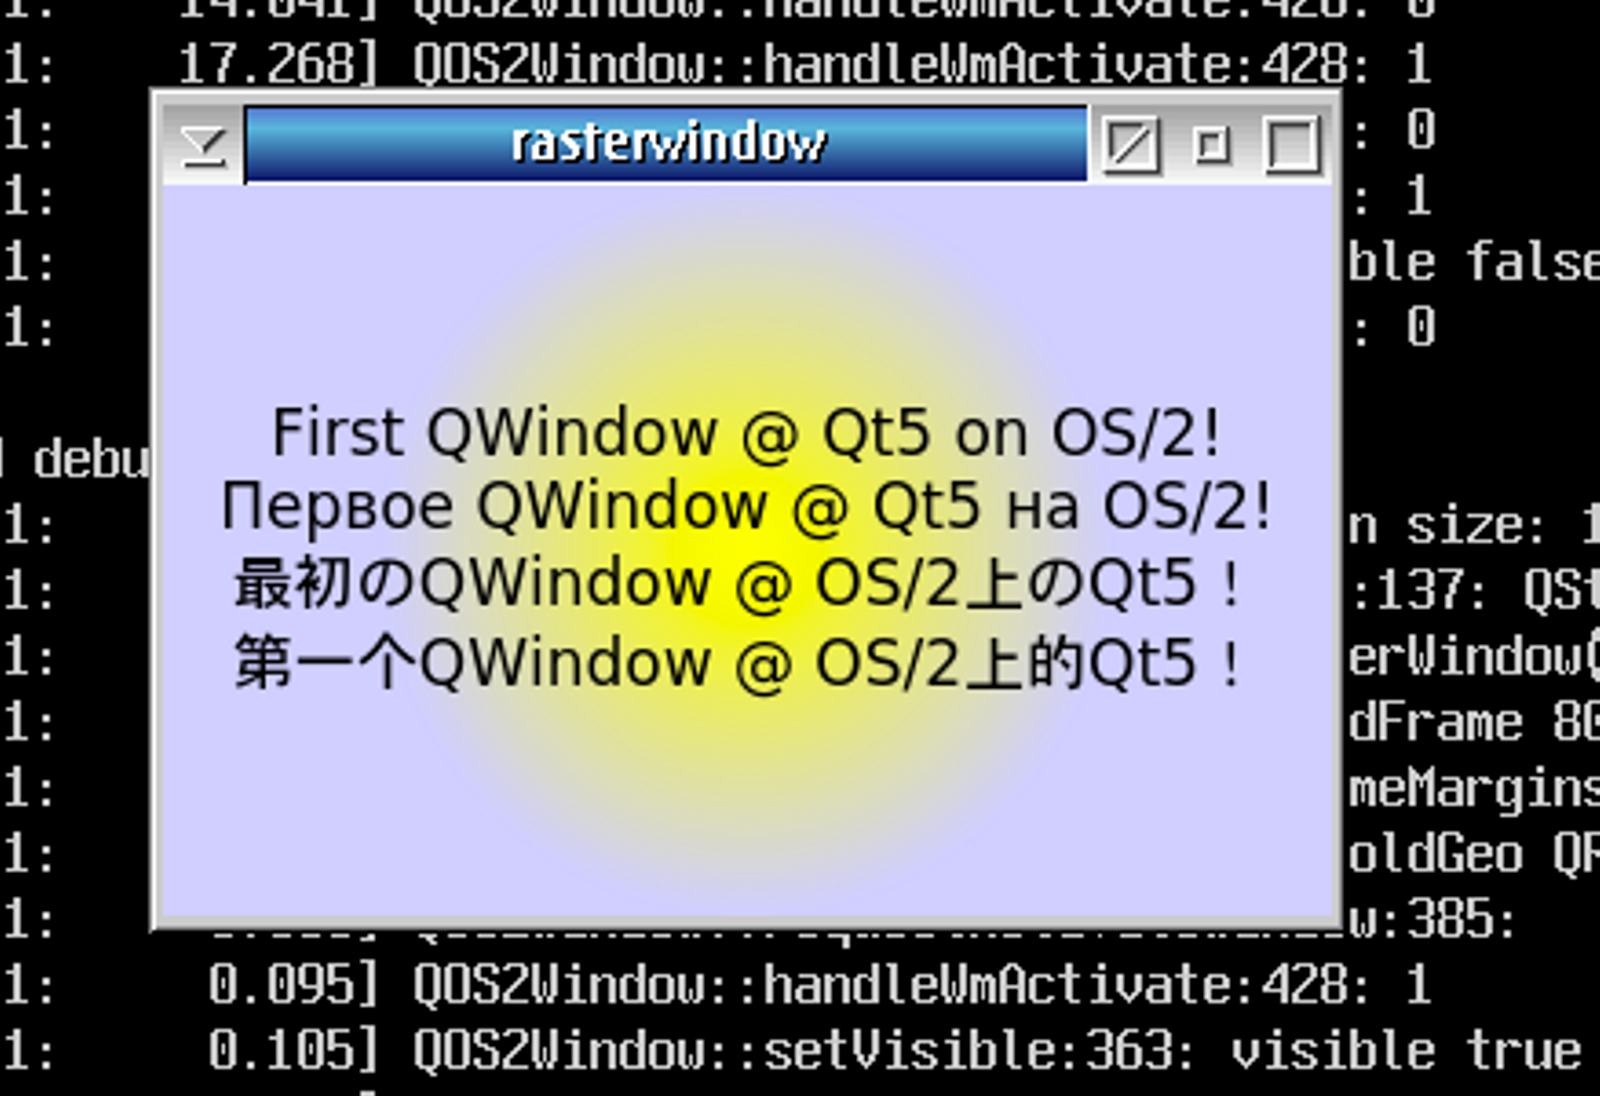 Qt 5 on OS/2